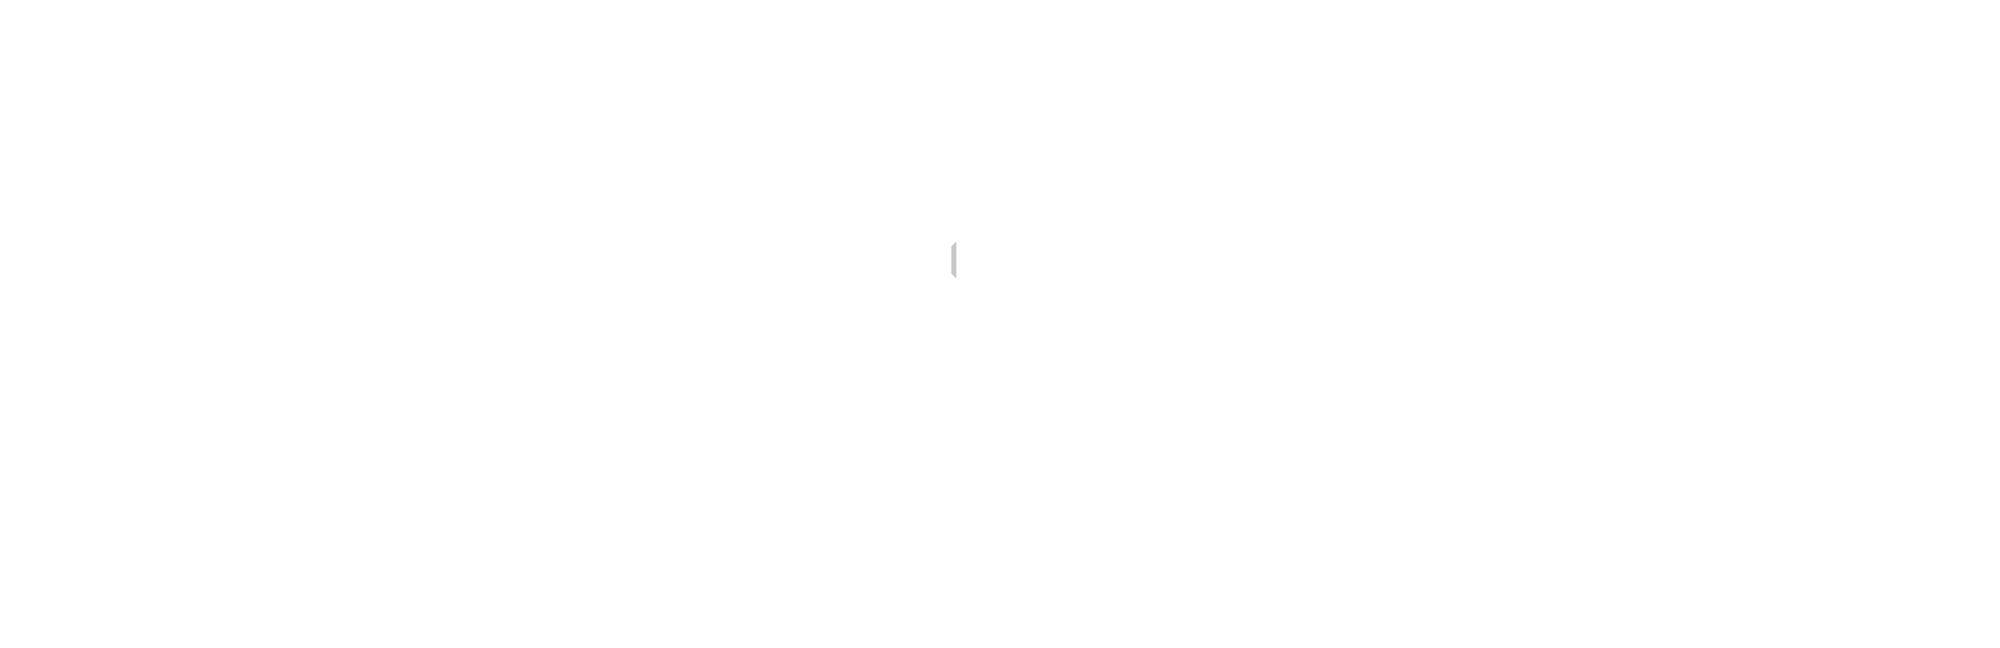 Borgward_Weißgrau